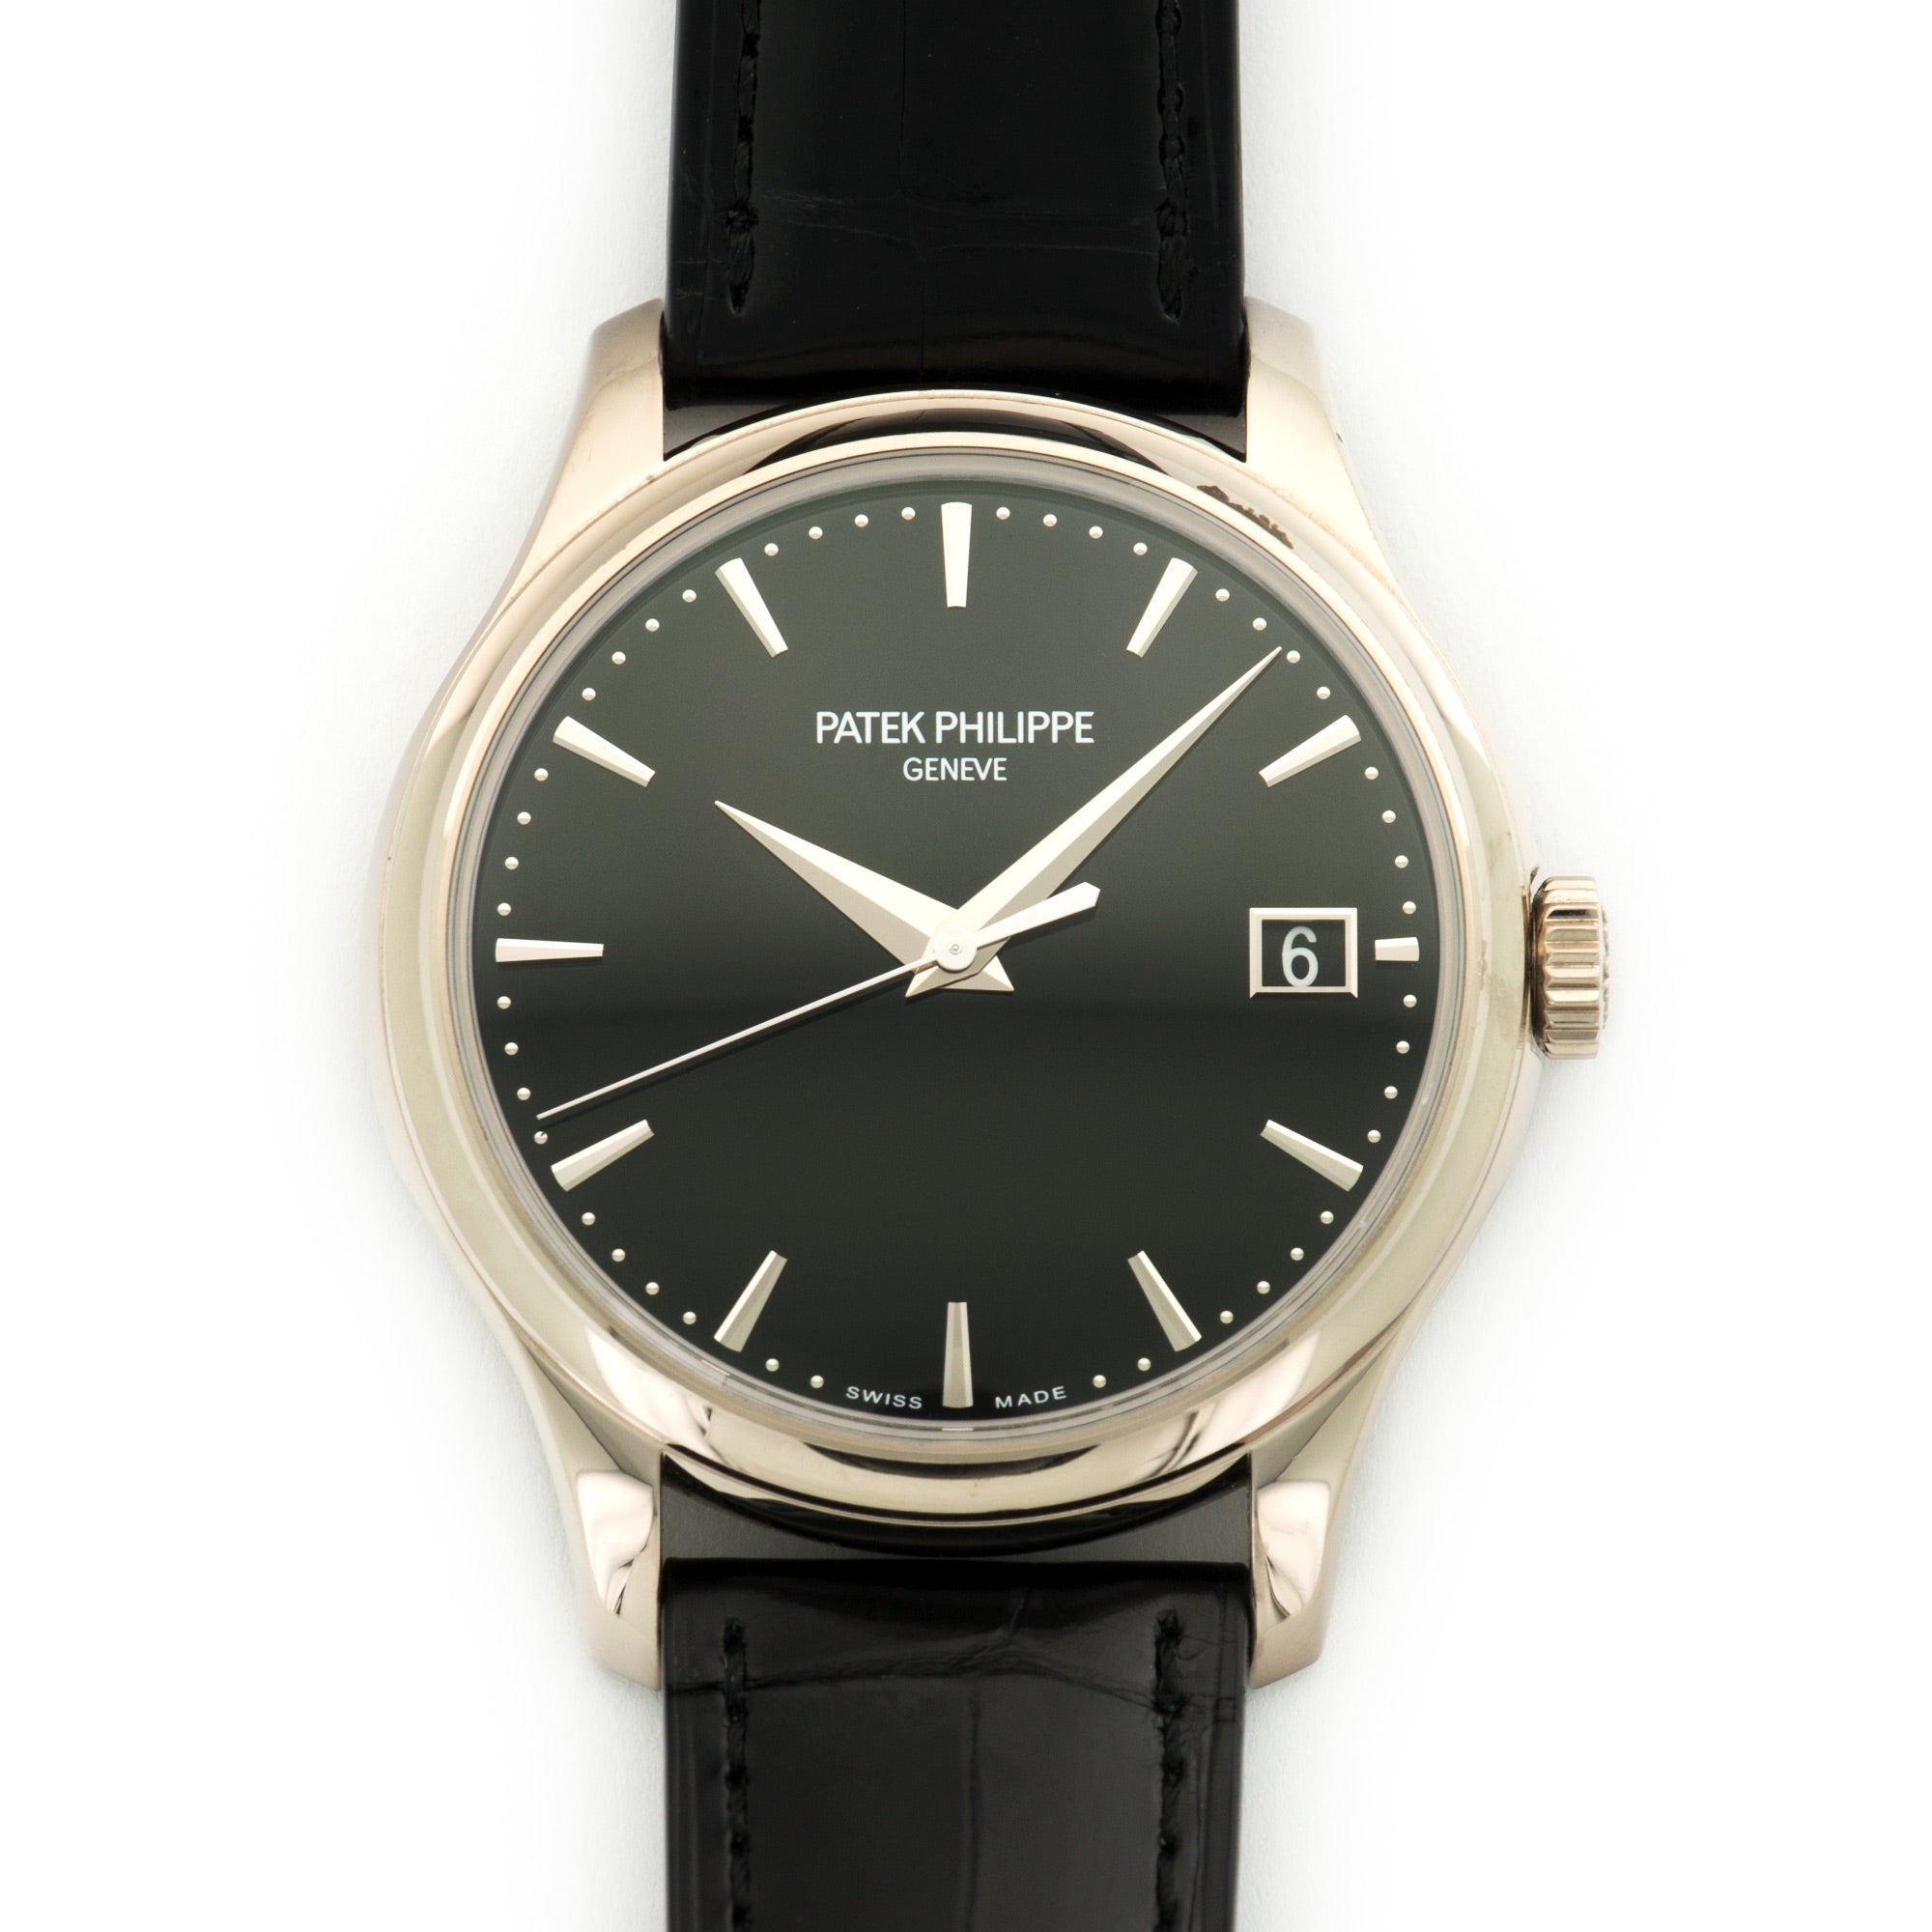 Patek Philippe - Patek Philippe White Gold Calatrava Watch Ref. 5227G - The Keystone Watches